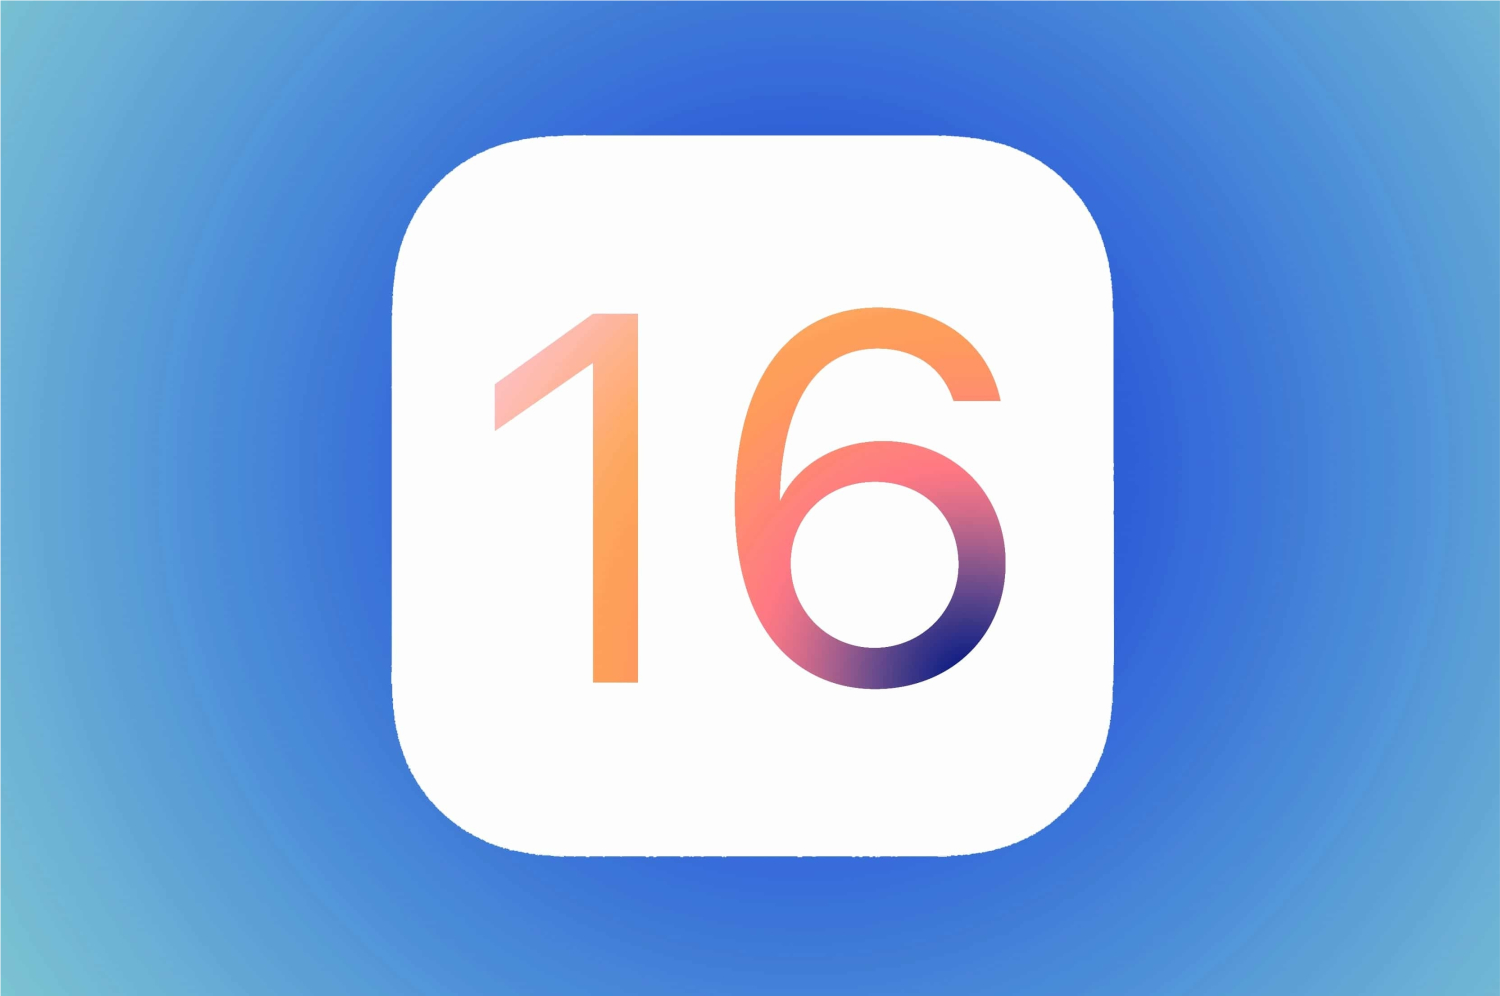 O que mudará no sistema dos iPhones após o lançamento do iOS 16? (Imagem: Reprodução/ MacMagazine)